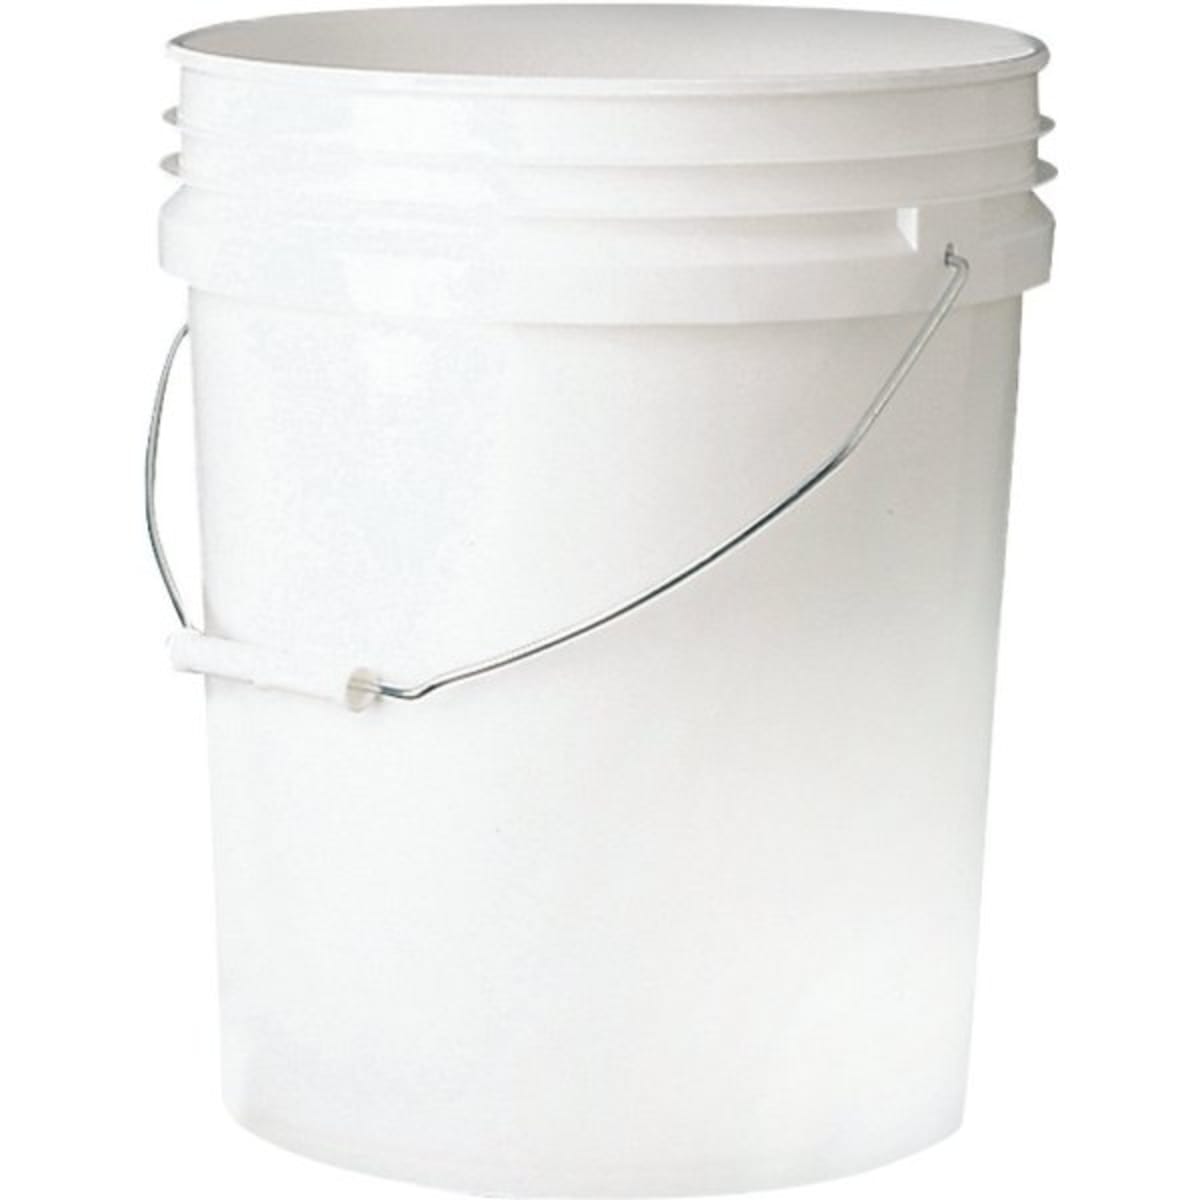 WaveBrake 4.5 Gal. Red Plastic Dirty Water Bucket